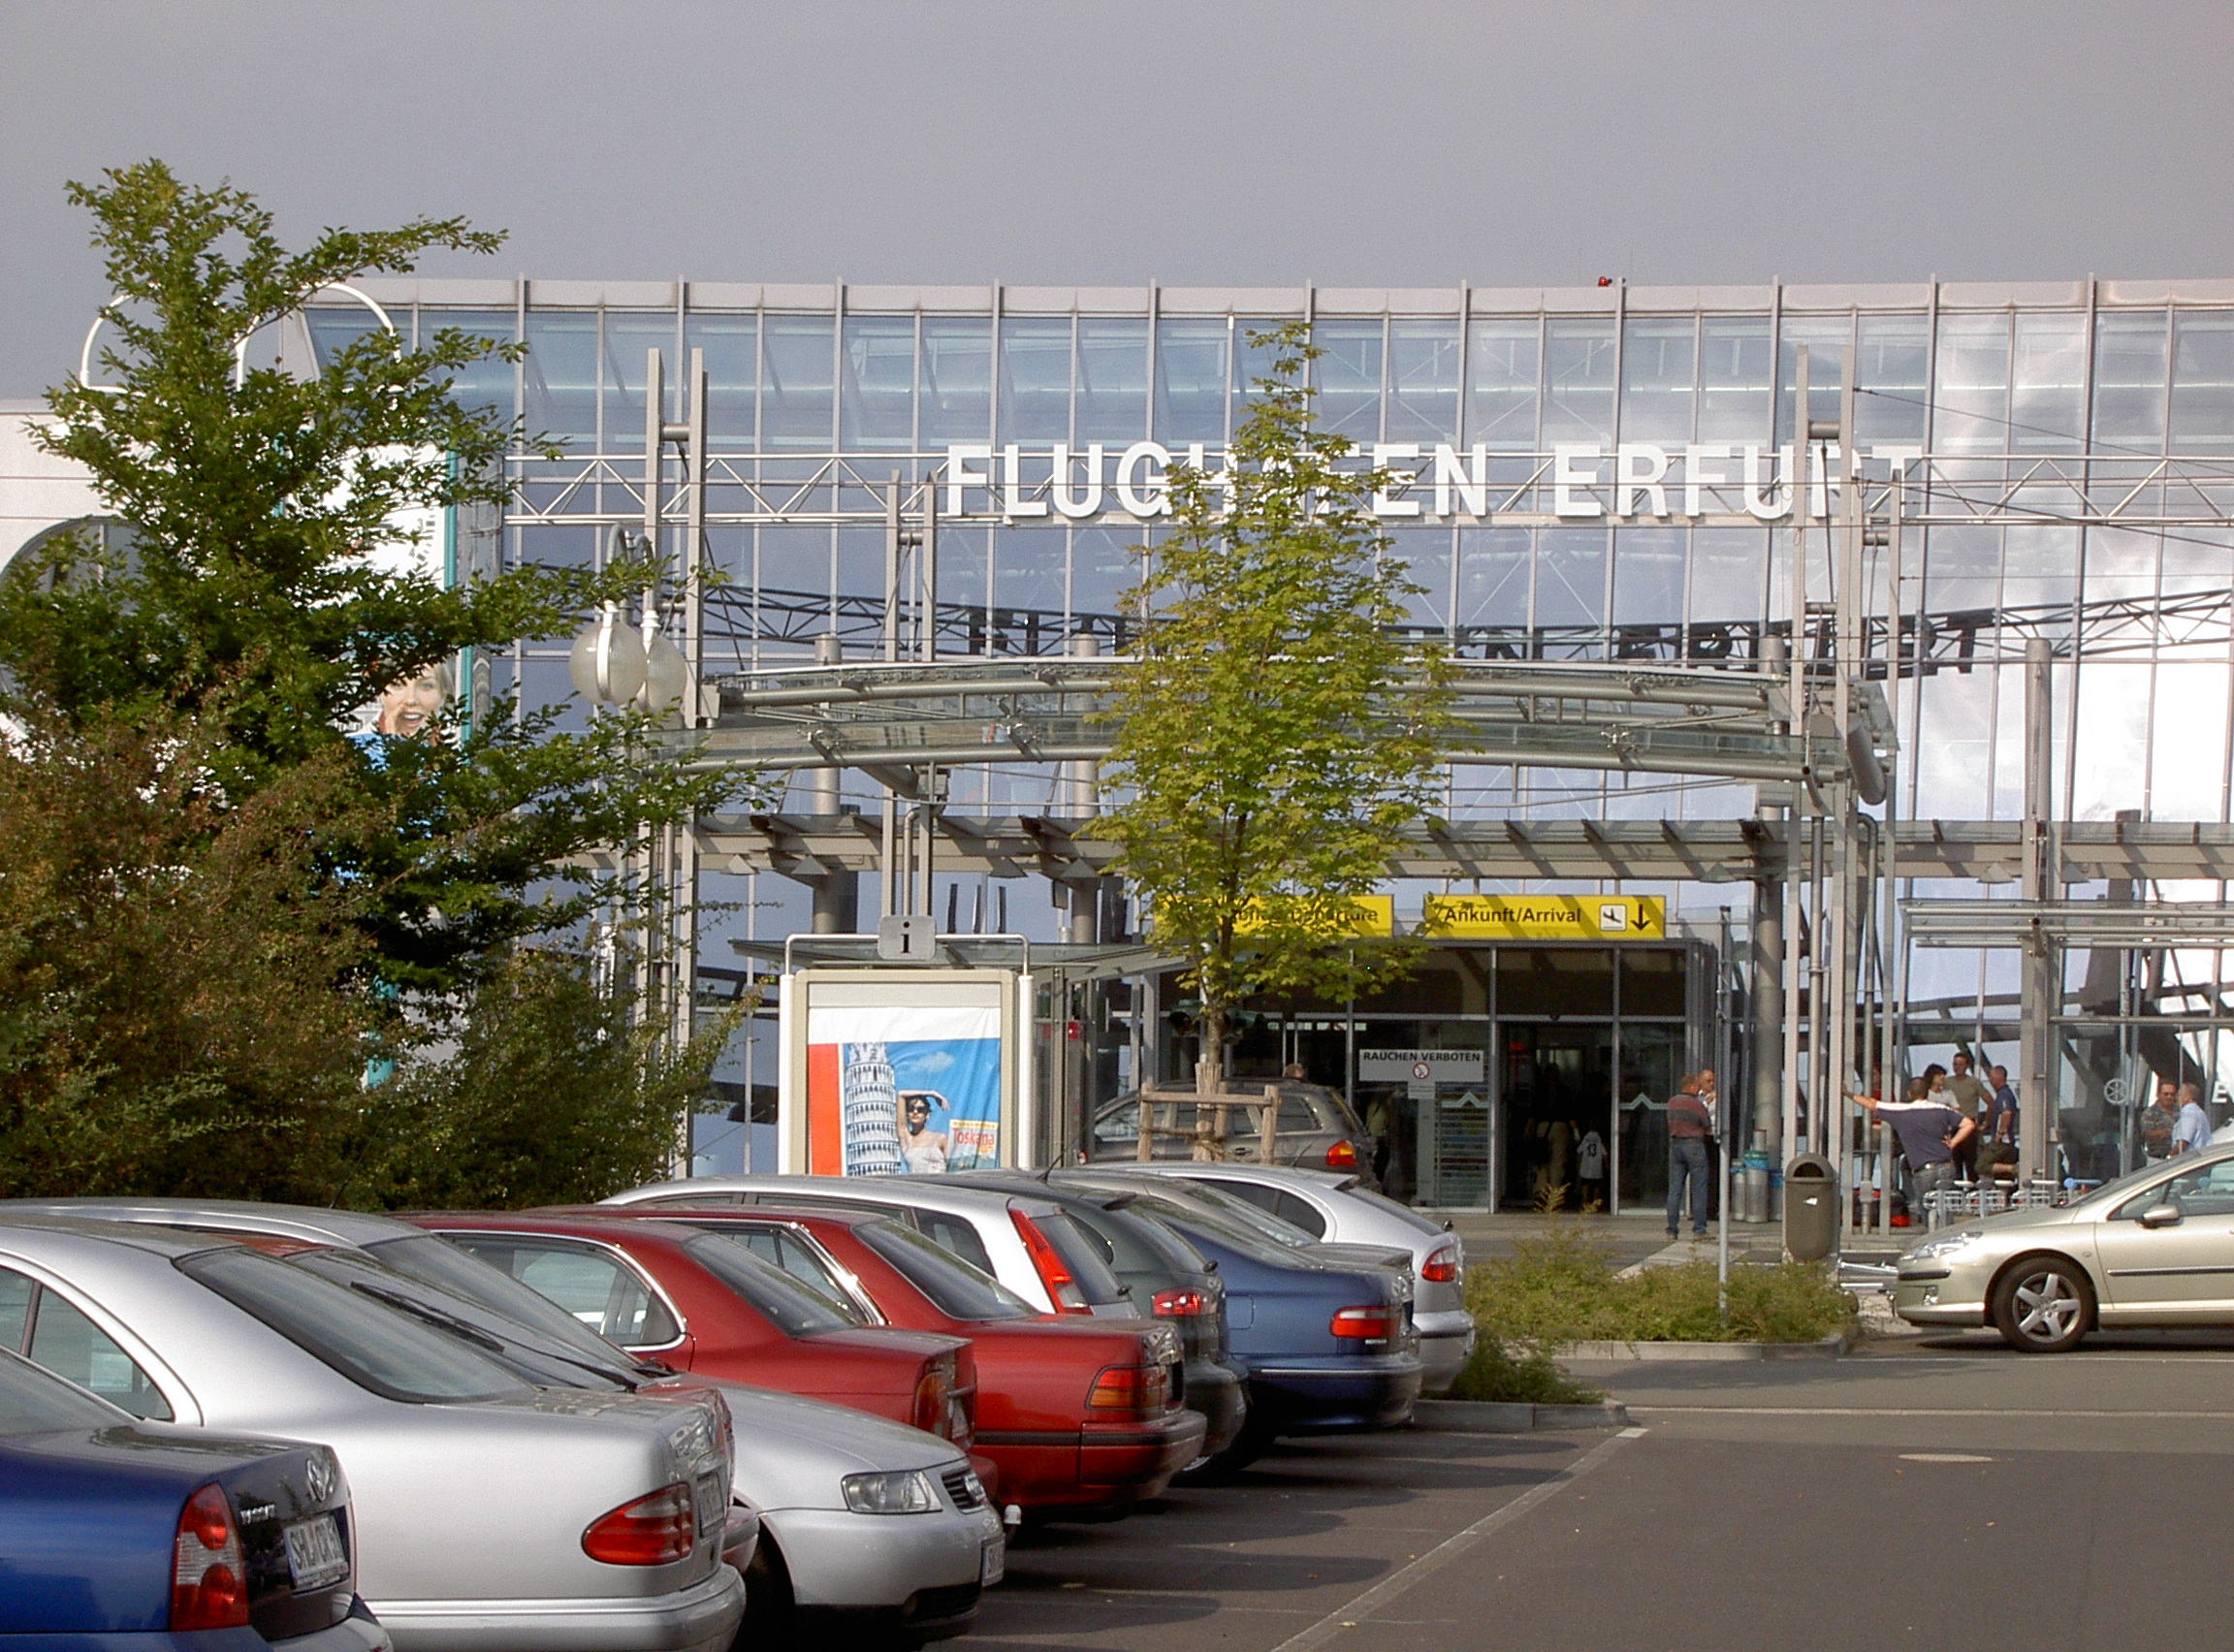 Flughafen Erfurt 002